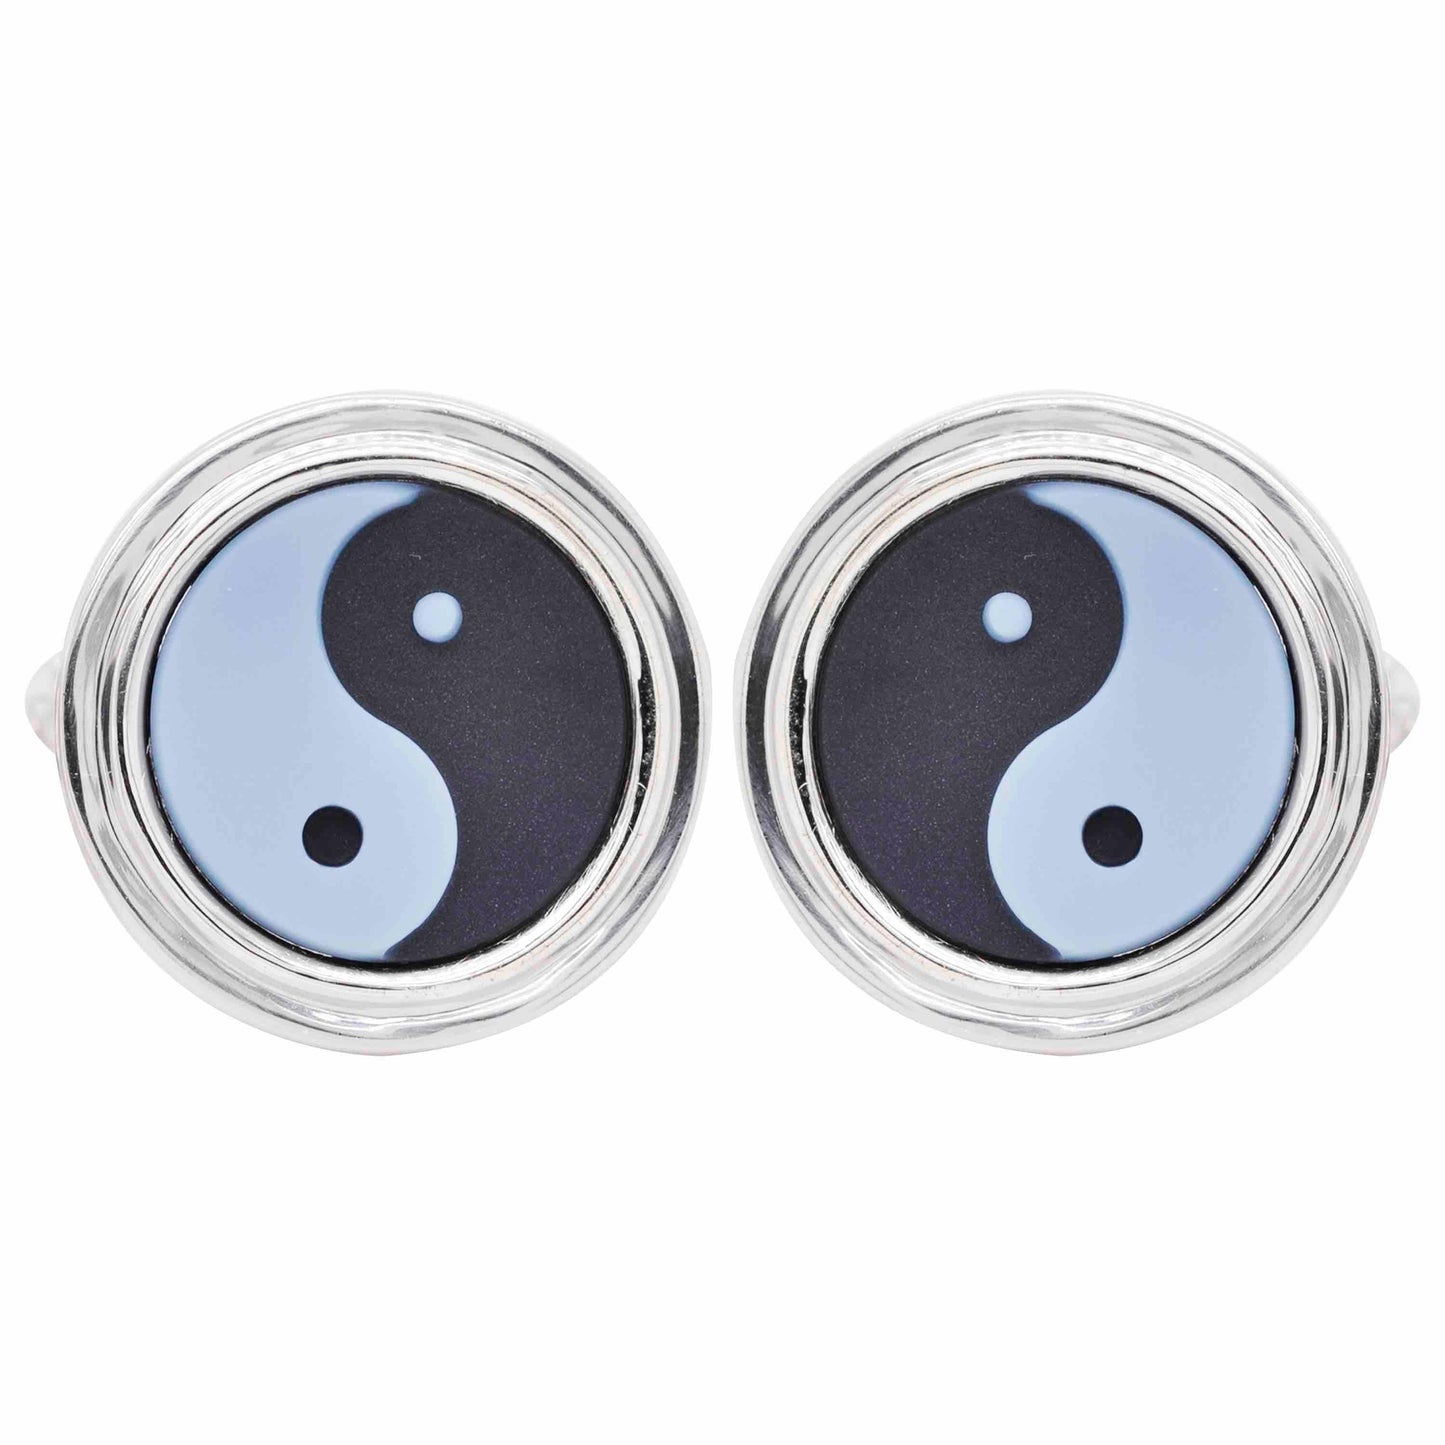 yin yang cufflinks